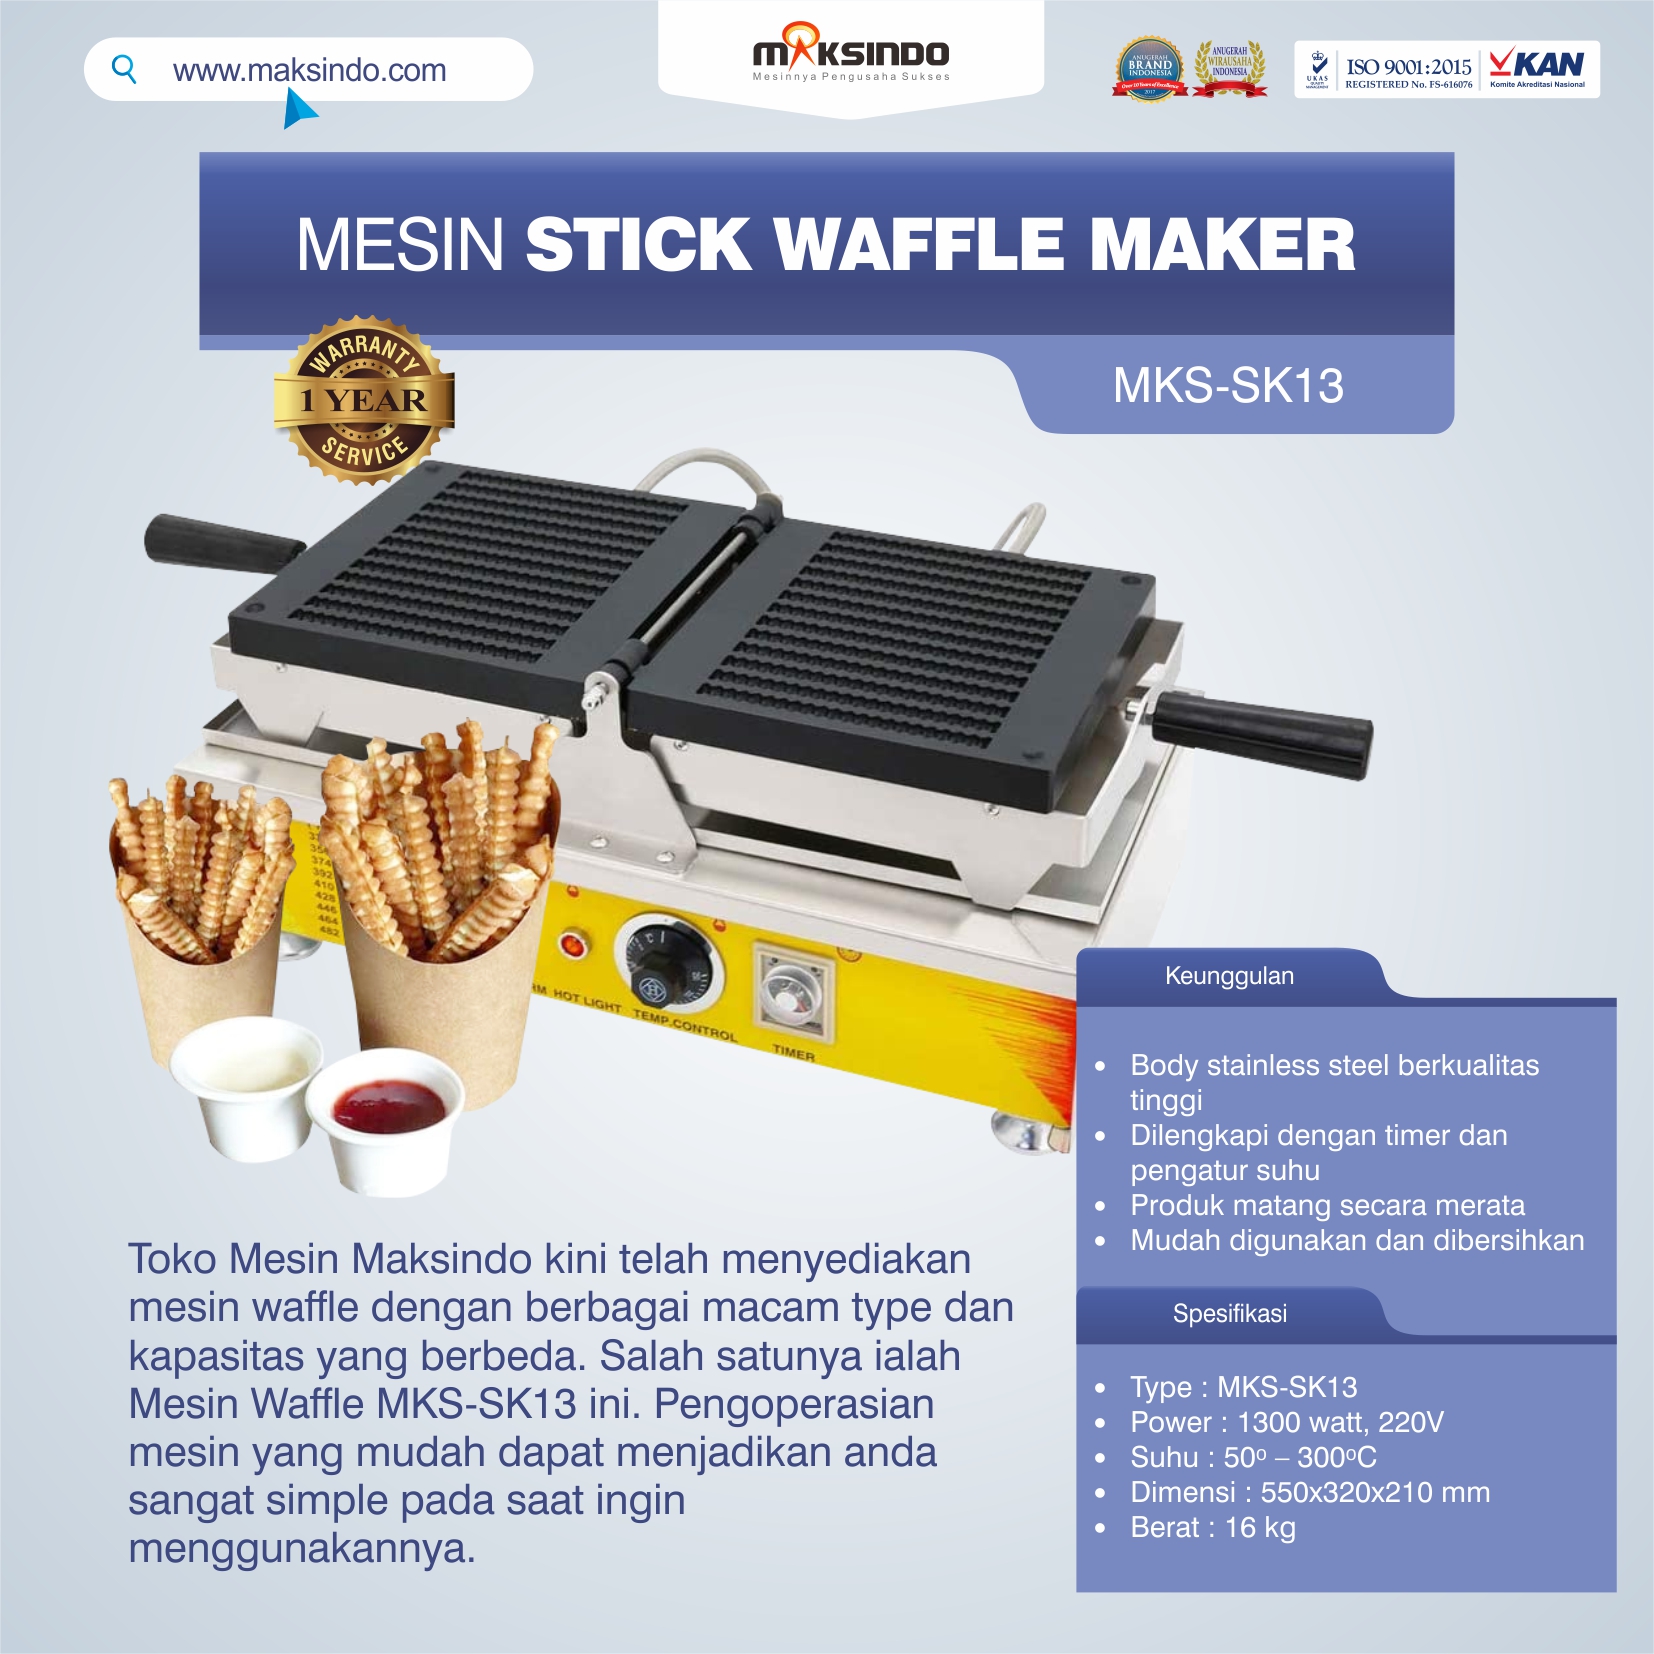 Jual Mesin Stick Waffle Maker MKS-SK13 di Medan